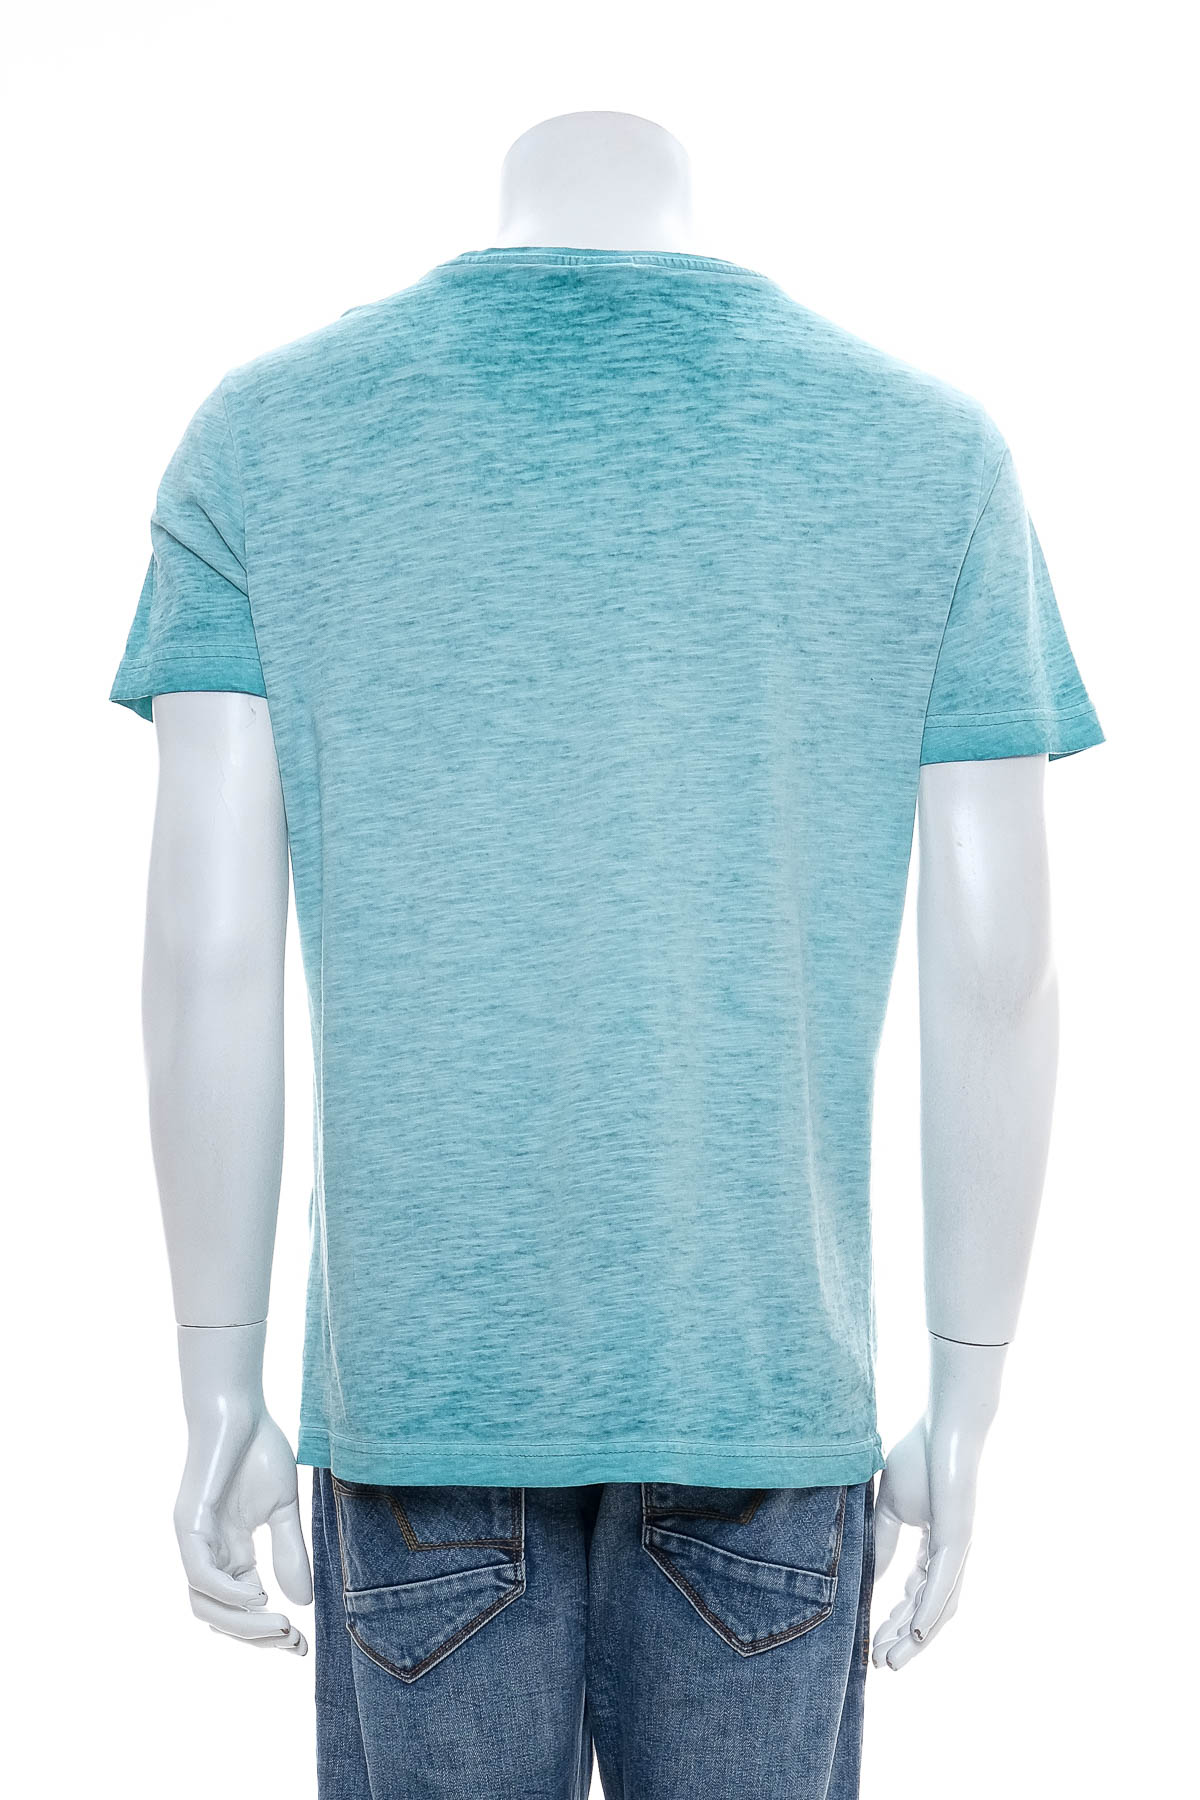 Ανδρικό μπλουζάκι - S.Oliver - 1